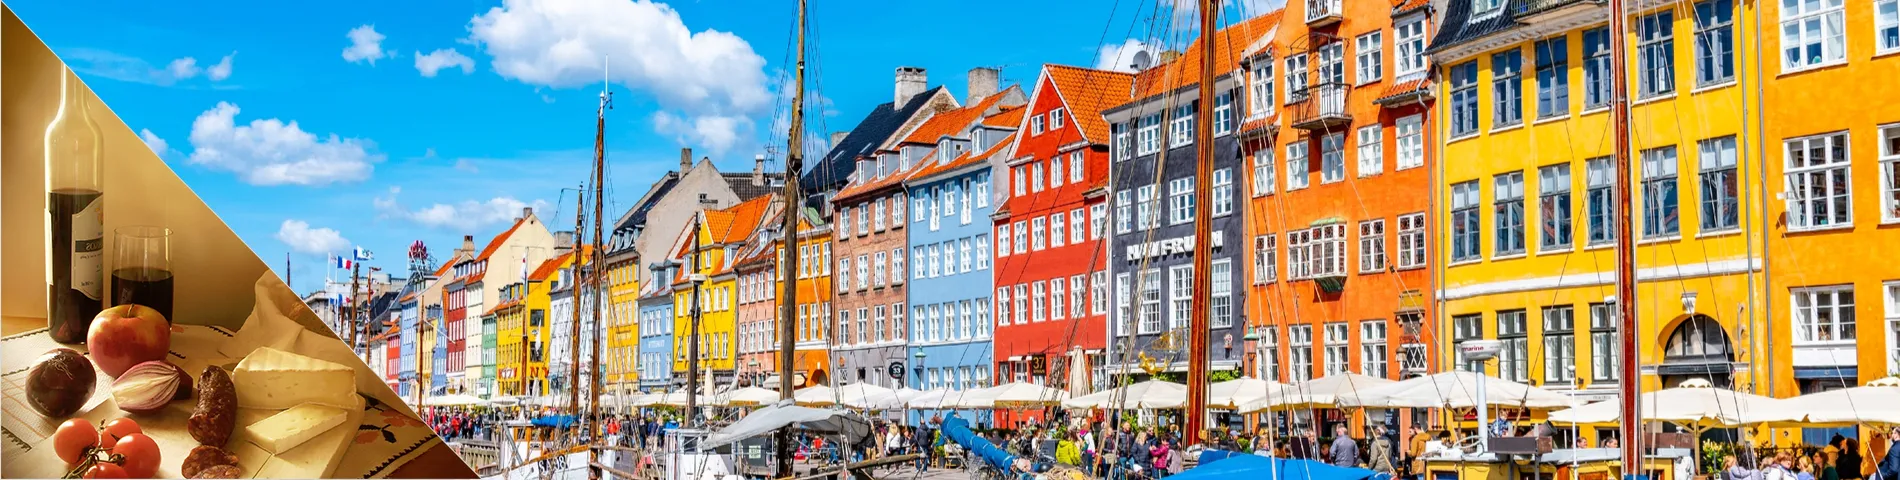 Данія - данська та пізнання культури